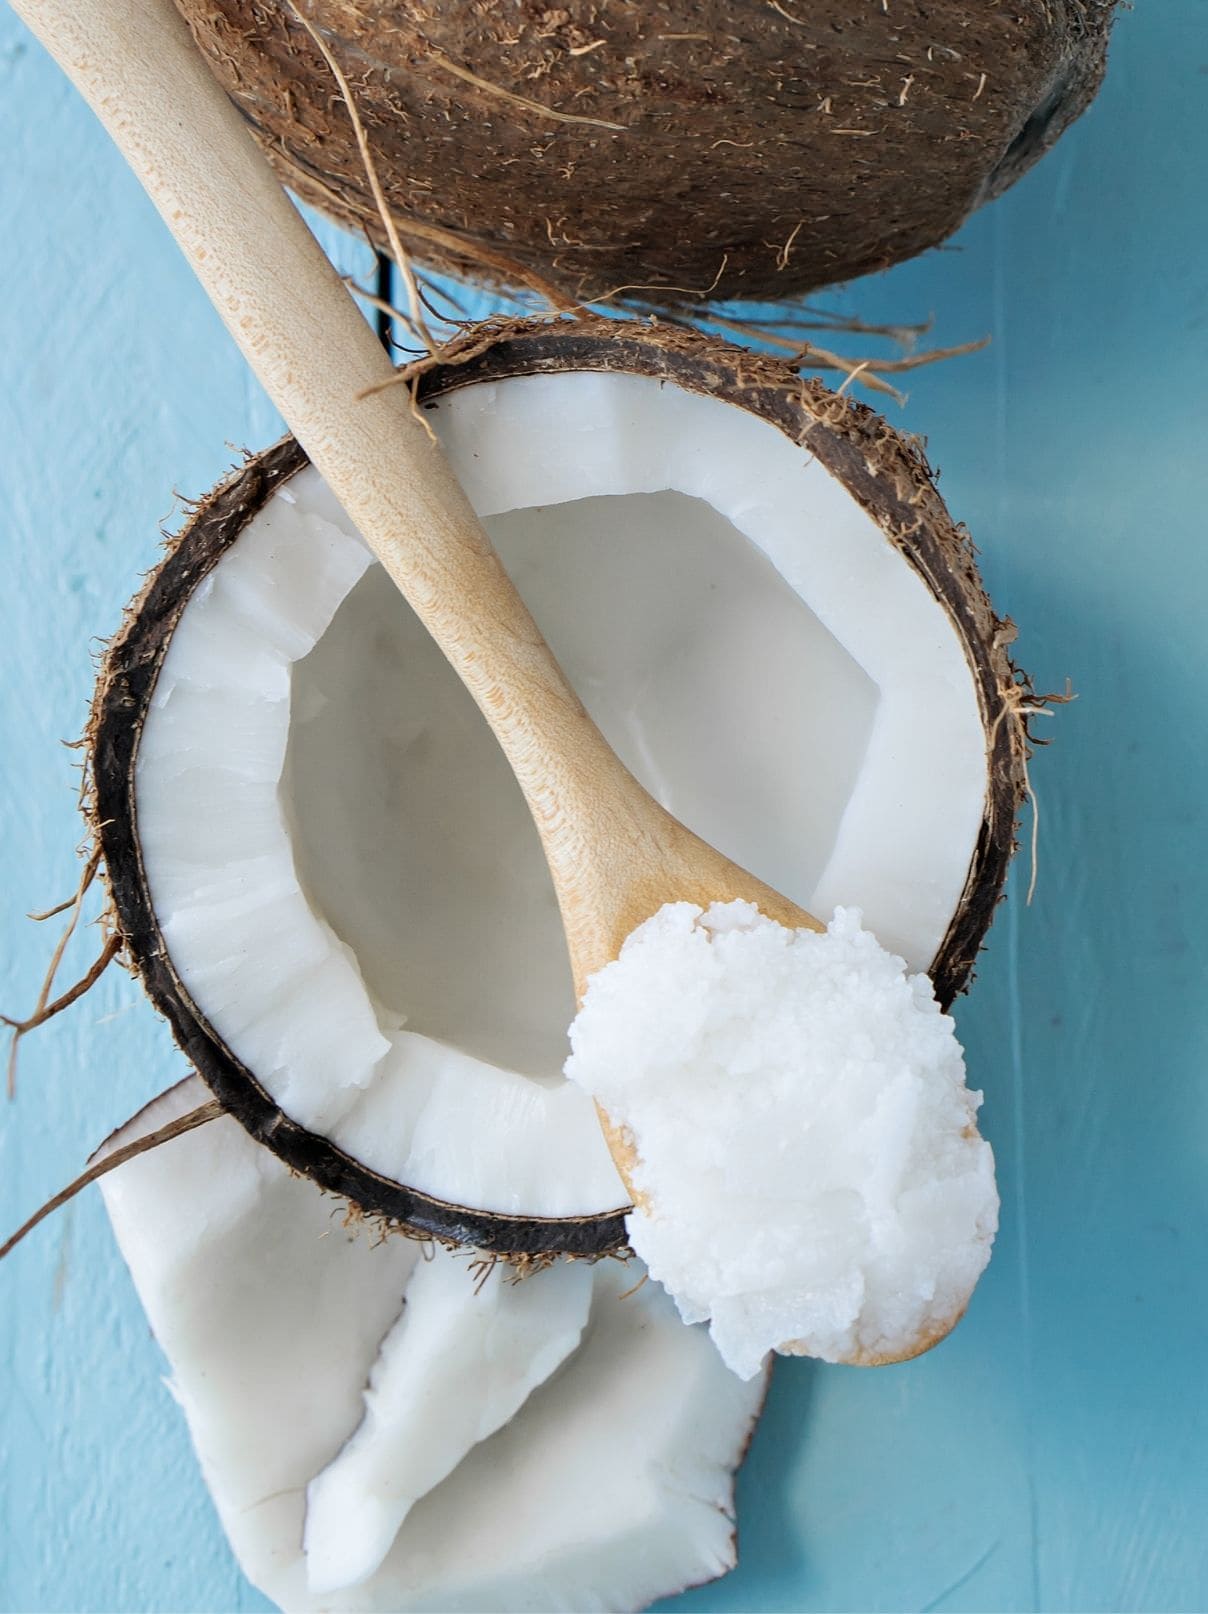 Best Ways to Liquefy Coconut Oil